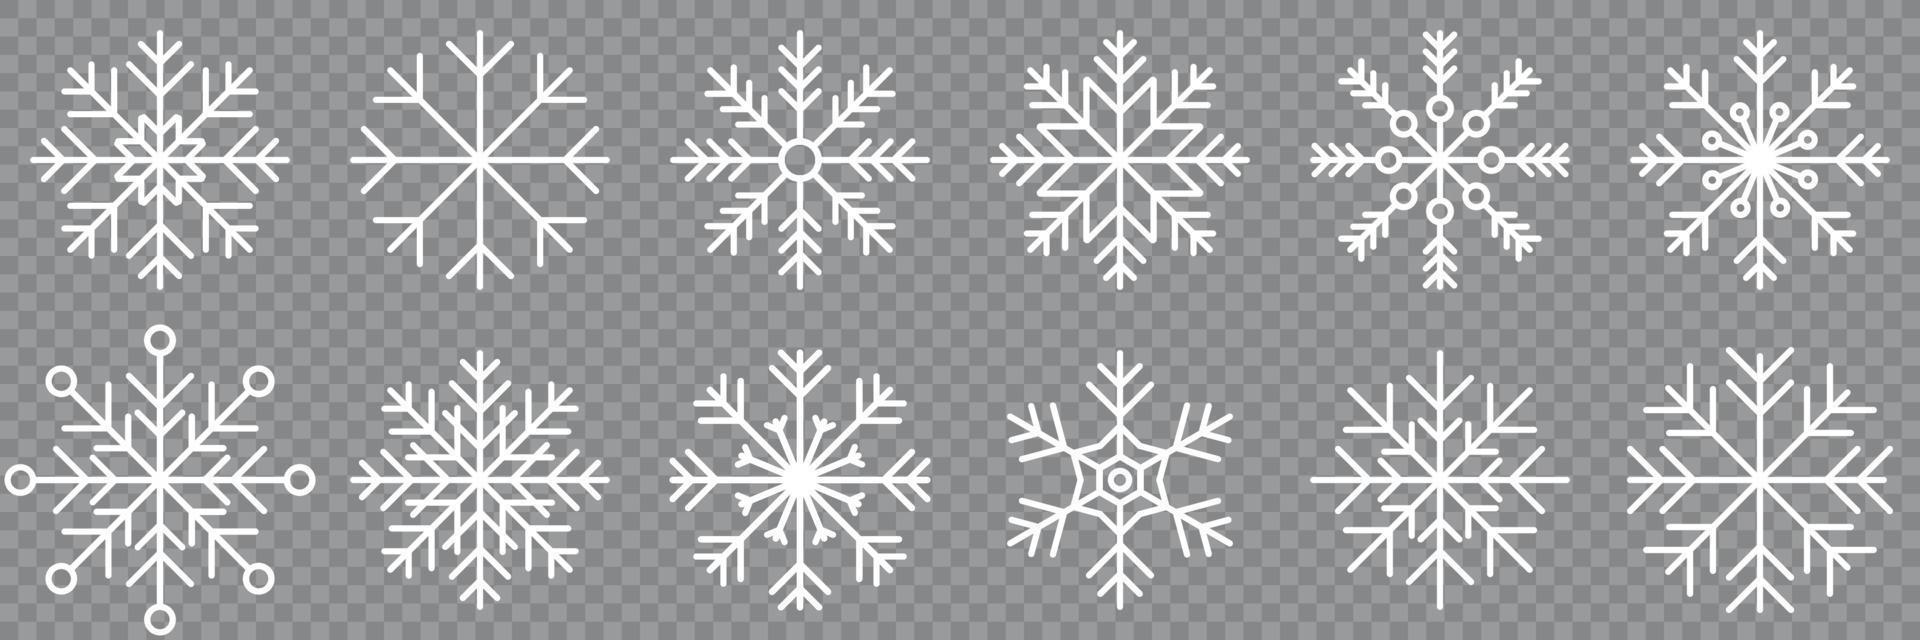 coleção de ícone de variações de floco de neve. conjunto de ícones de floco de neve. símbolos de floco de neve. ícone de neve. fundo de inverno geada. cristal de gelo de flocos de neve isolado. ilustração vetorial vetor